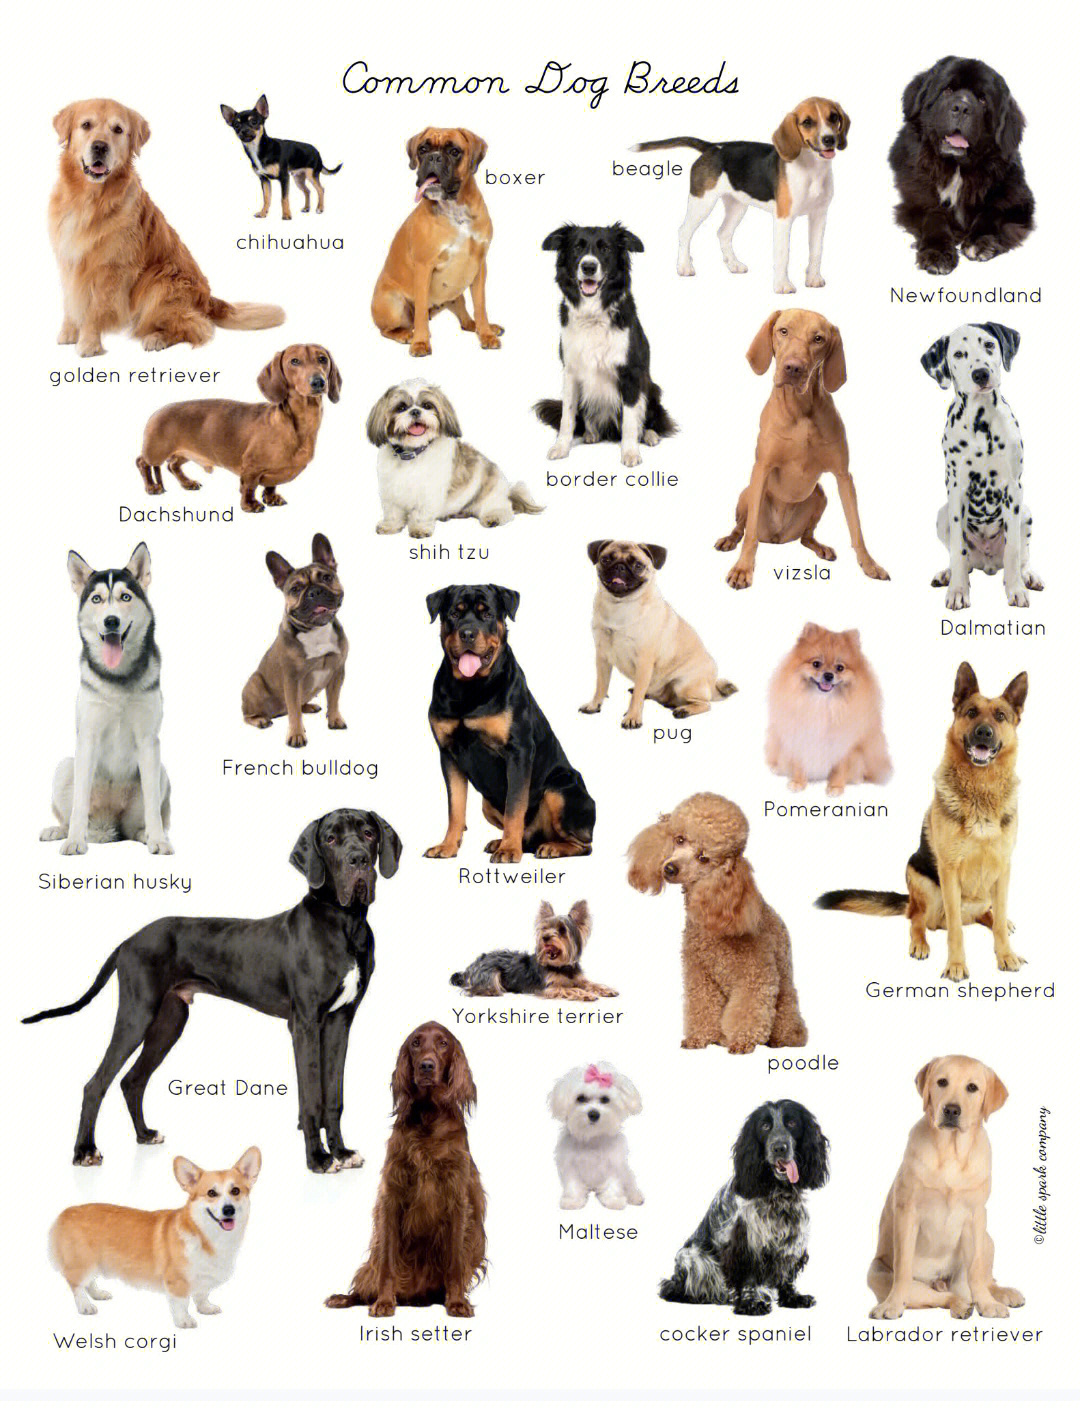 宠物狗品种大全幼犬图片